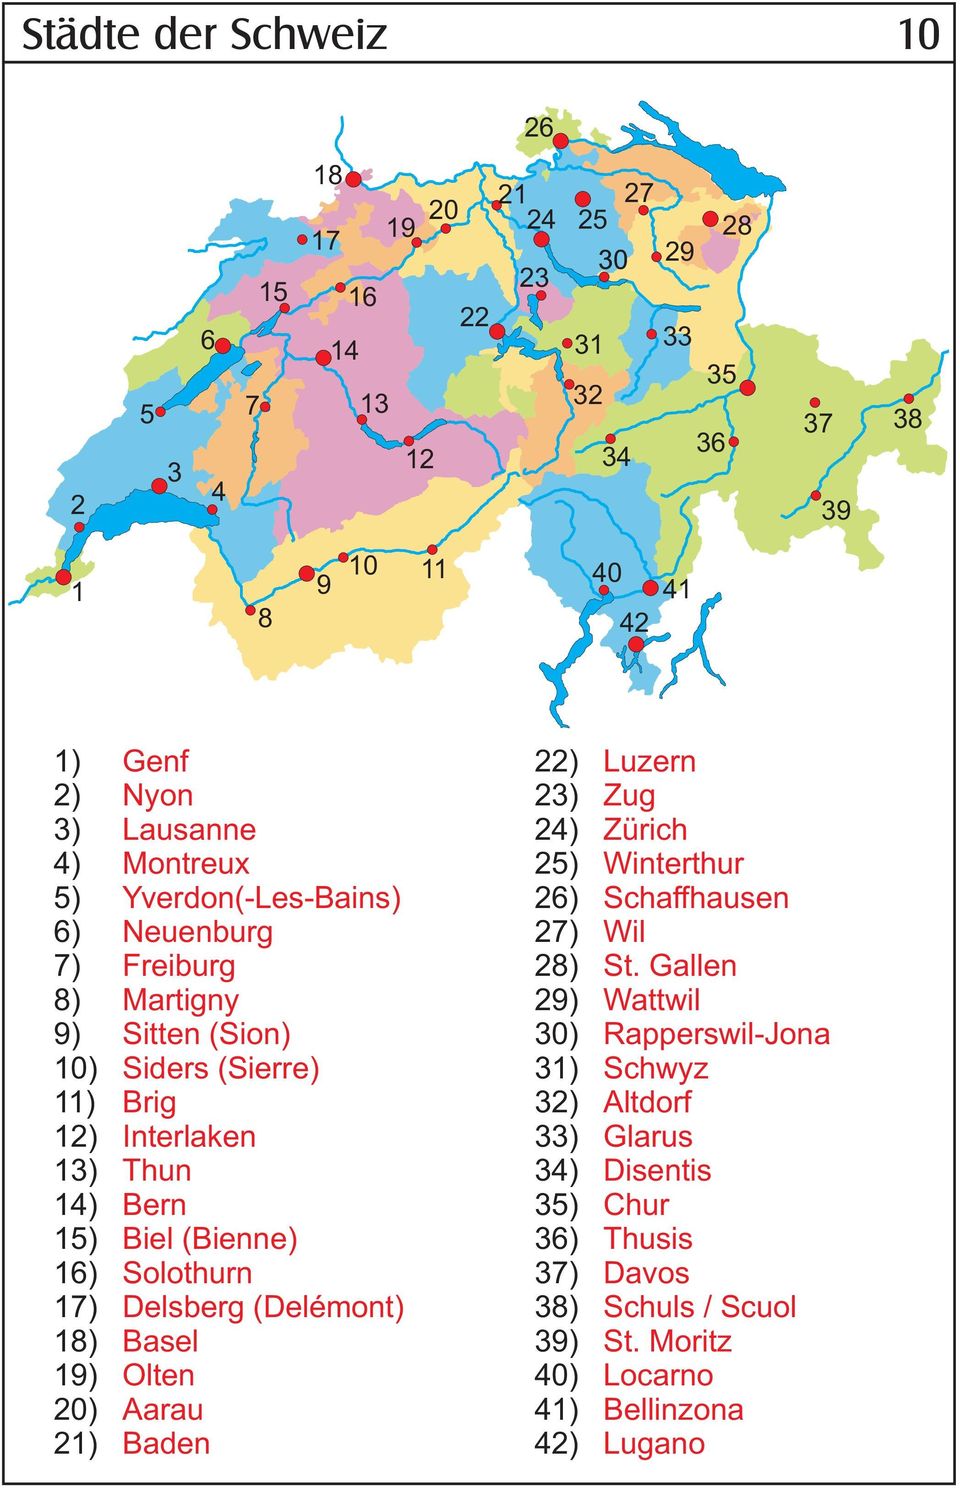 Bern Biel (Bienne) Solothurn Delsberg (Delémont) Basel Olten Aarau Baden ) 3) 4) 5) 6) 7) 8) 9) 30) 31) 3) 33) 34) 35) 36) 37) 38) 39) 40) 41) 4) Luzern Zug